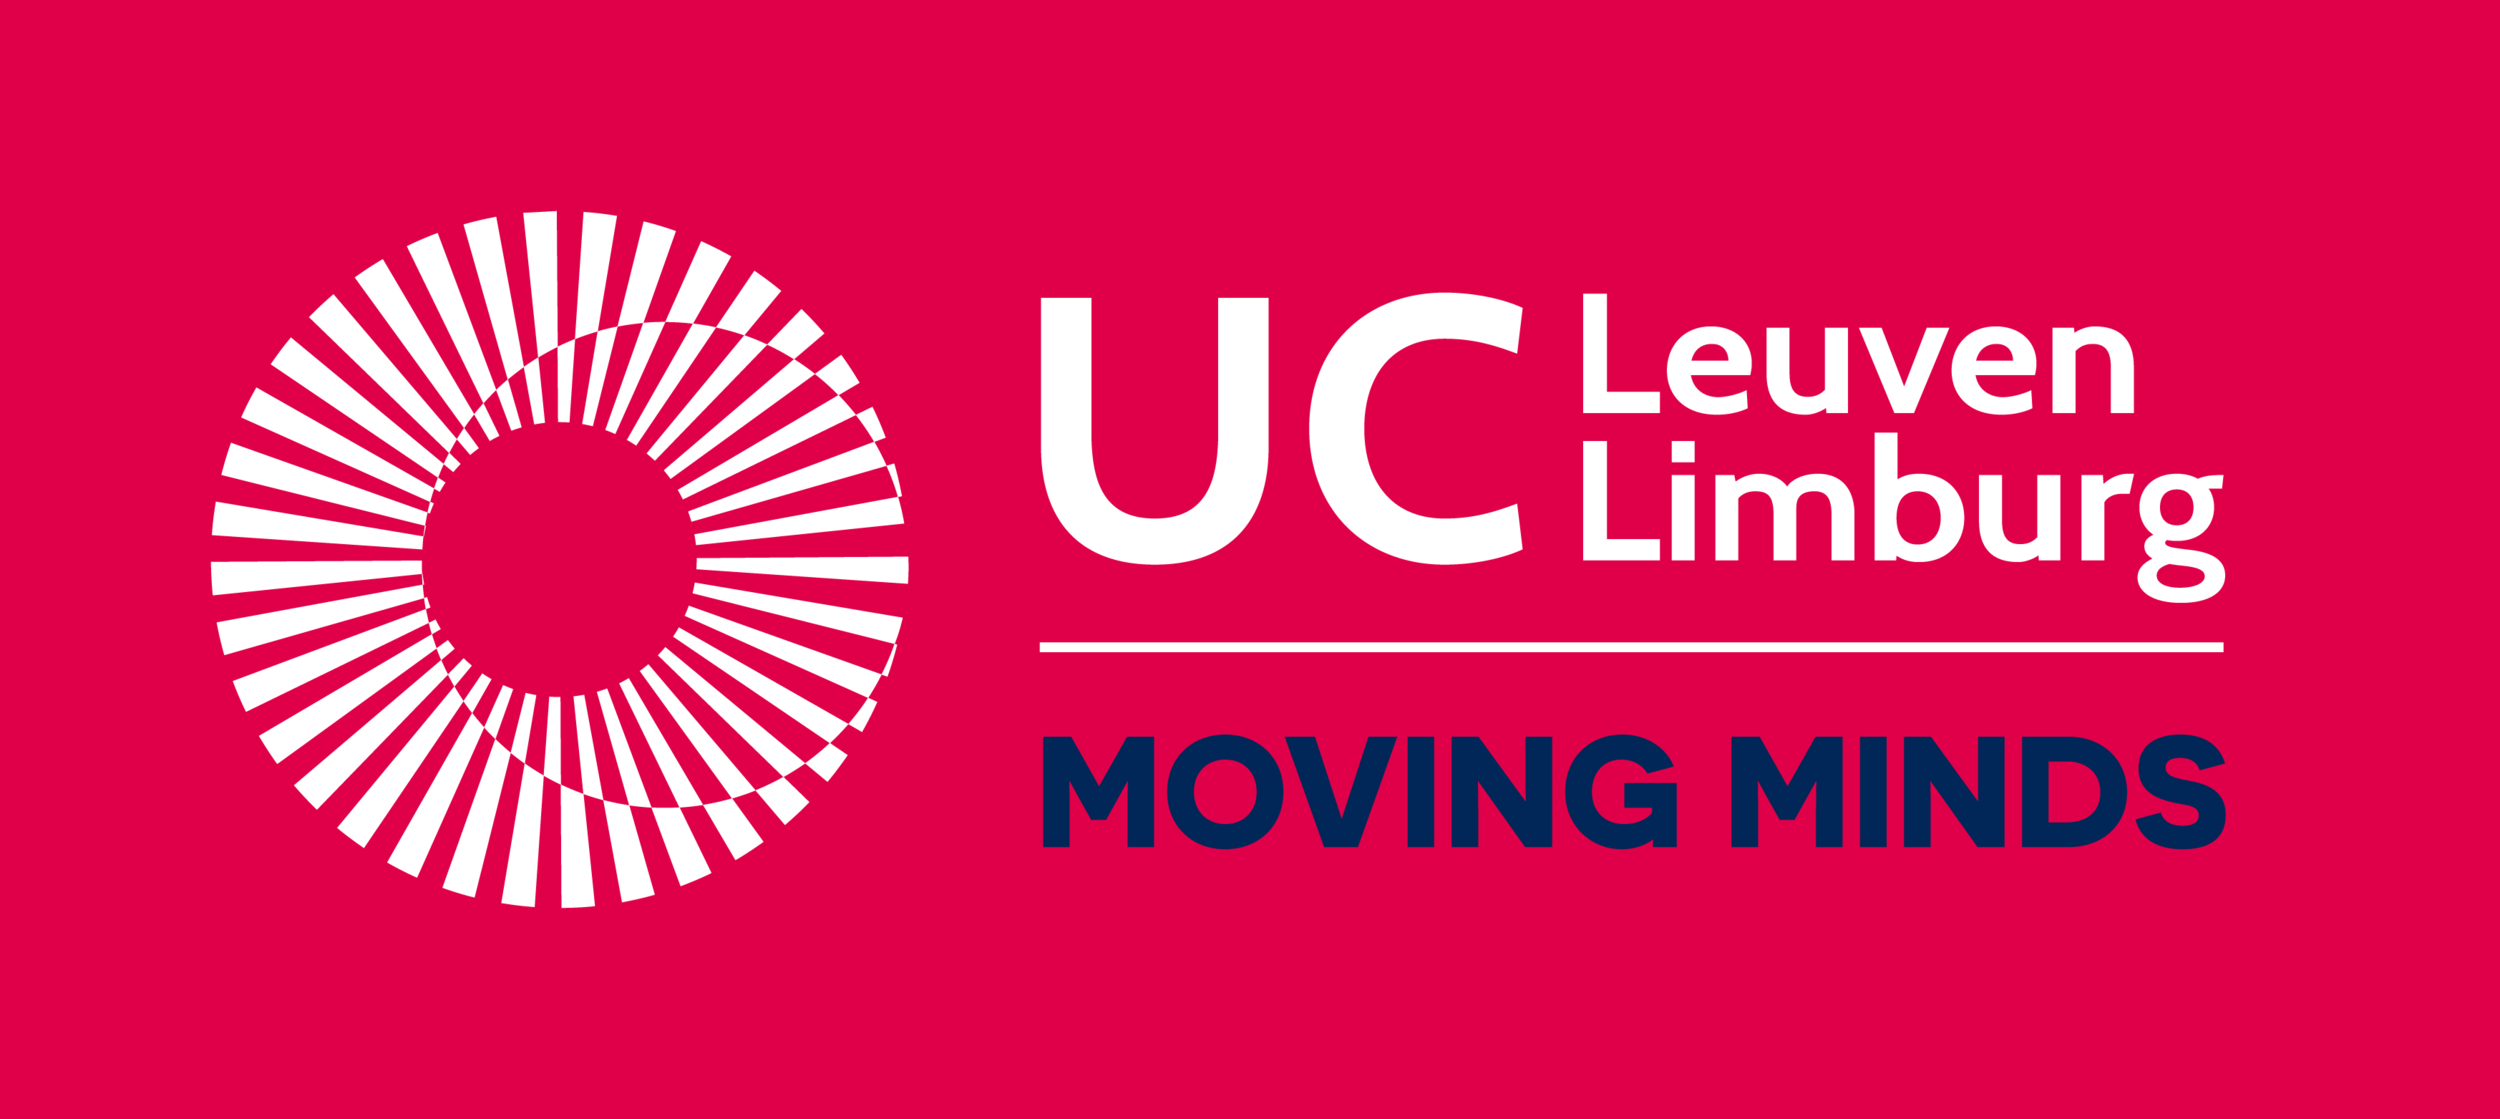 UCLL-logo.png